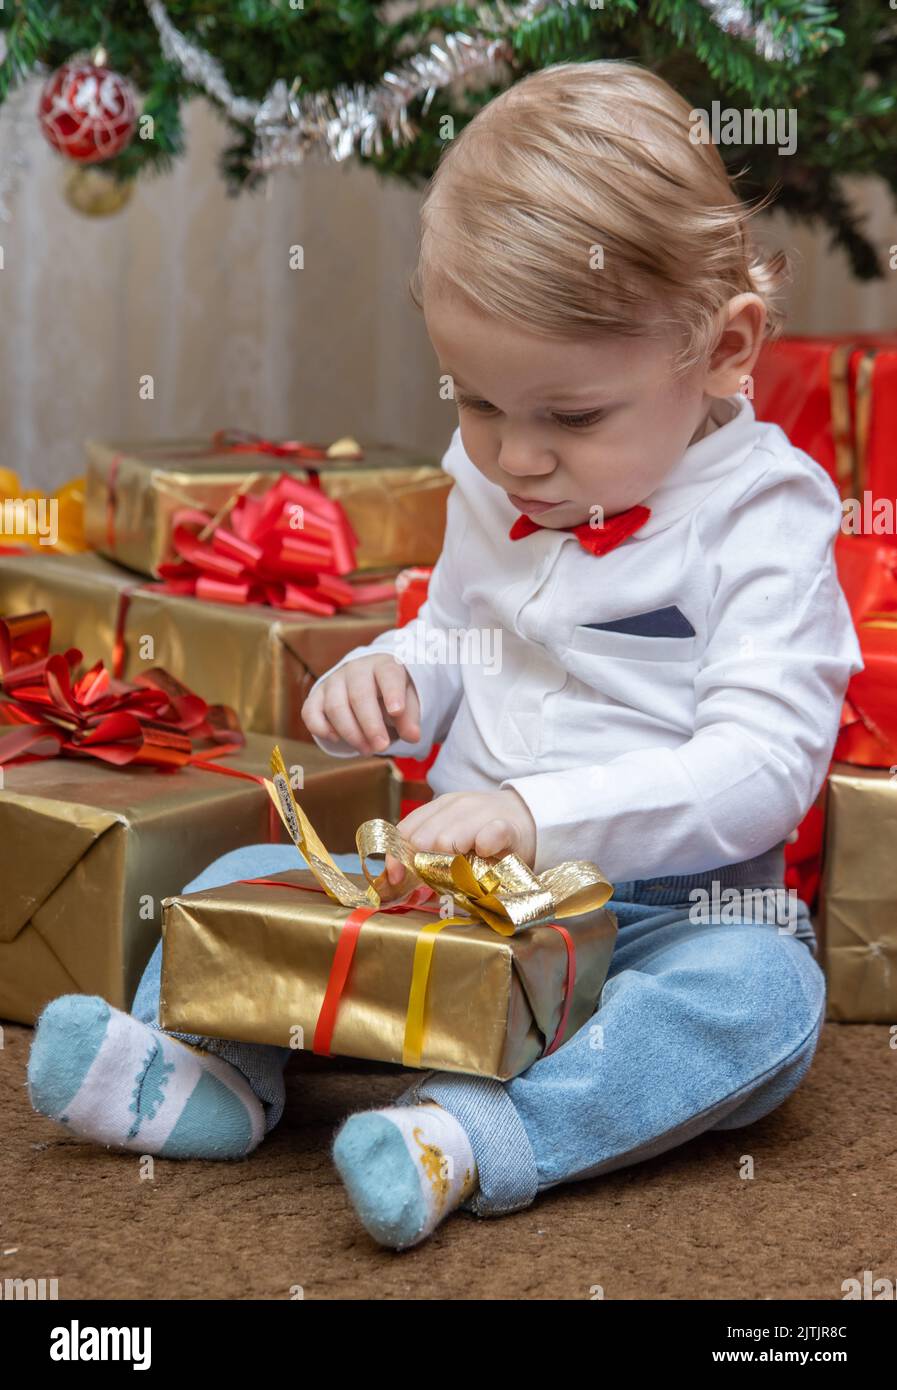 Ein kleiner Junge versucht, ein Geschenk unter dem Weihnachtsbaum auszupacken Stockfoto